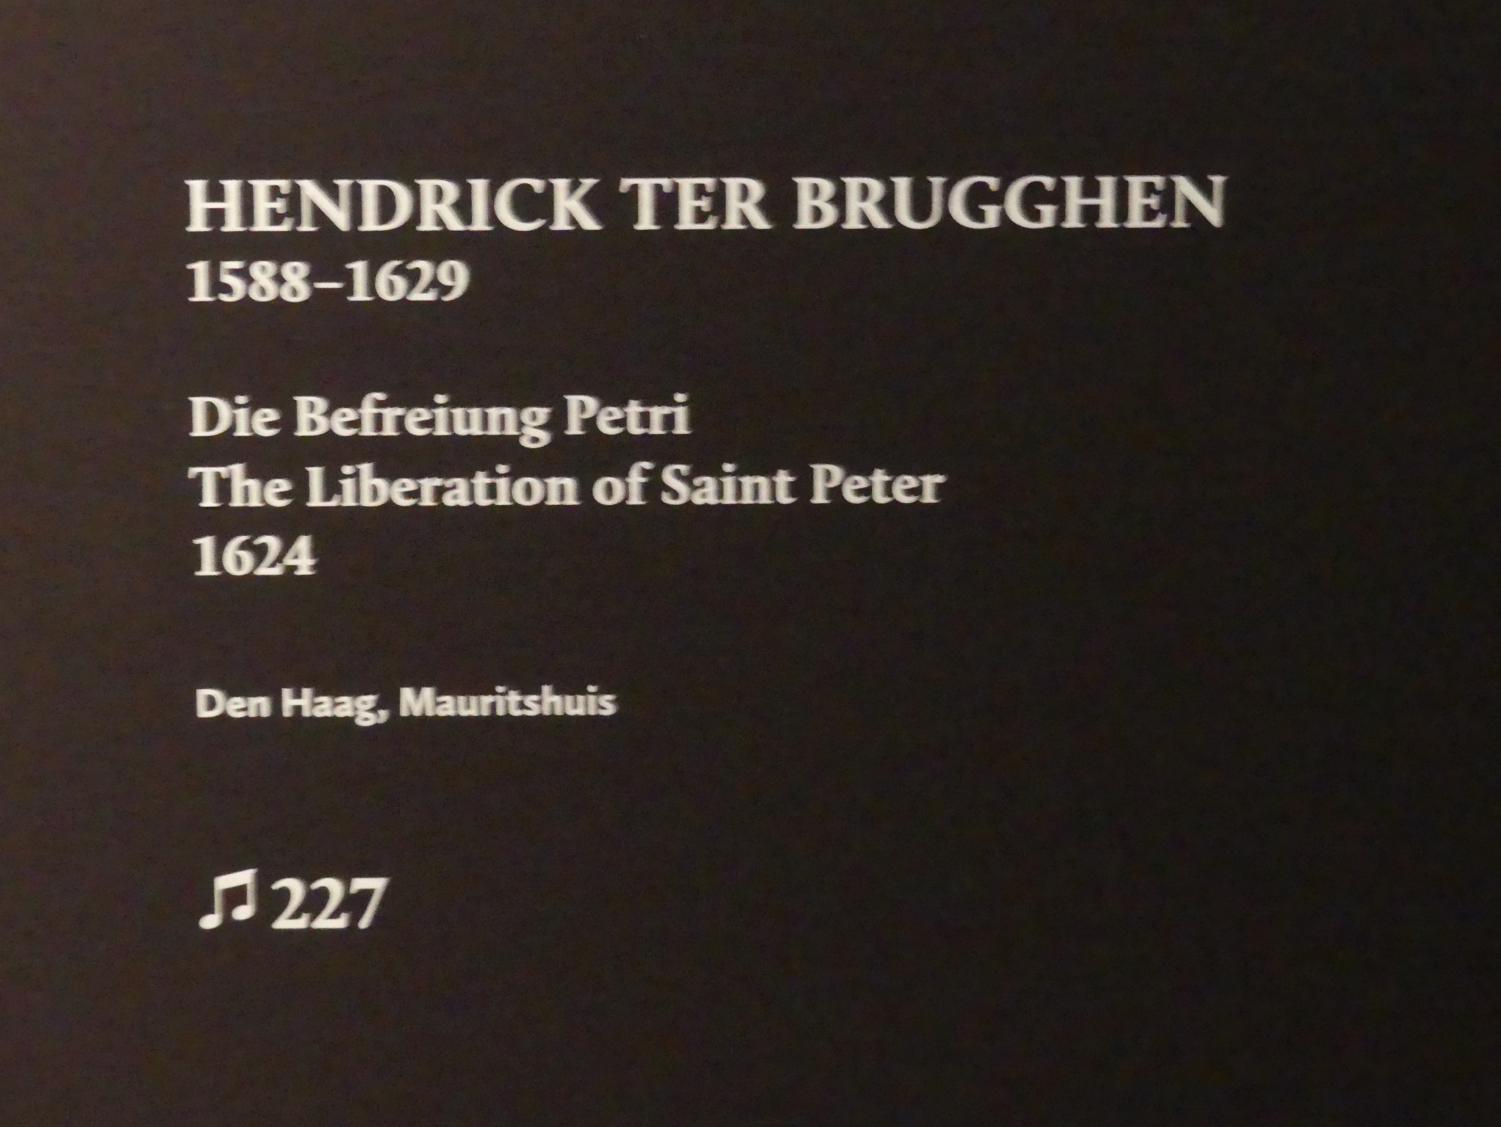 Hendrick ter Brugghen (1616–1629), Die Befreiung Petri, München, Alte Pinakothek, Ausstellung "Utrecht, Caravaggio und Europa" vom 17.04.-21.07.2019, Heilige: Befreiung Petri, 1624, Bild 2/2